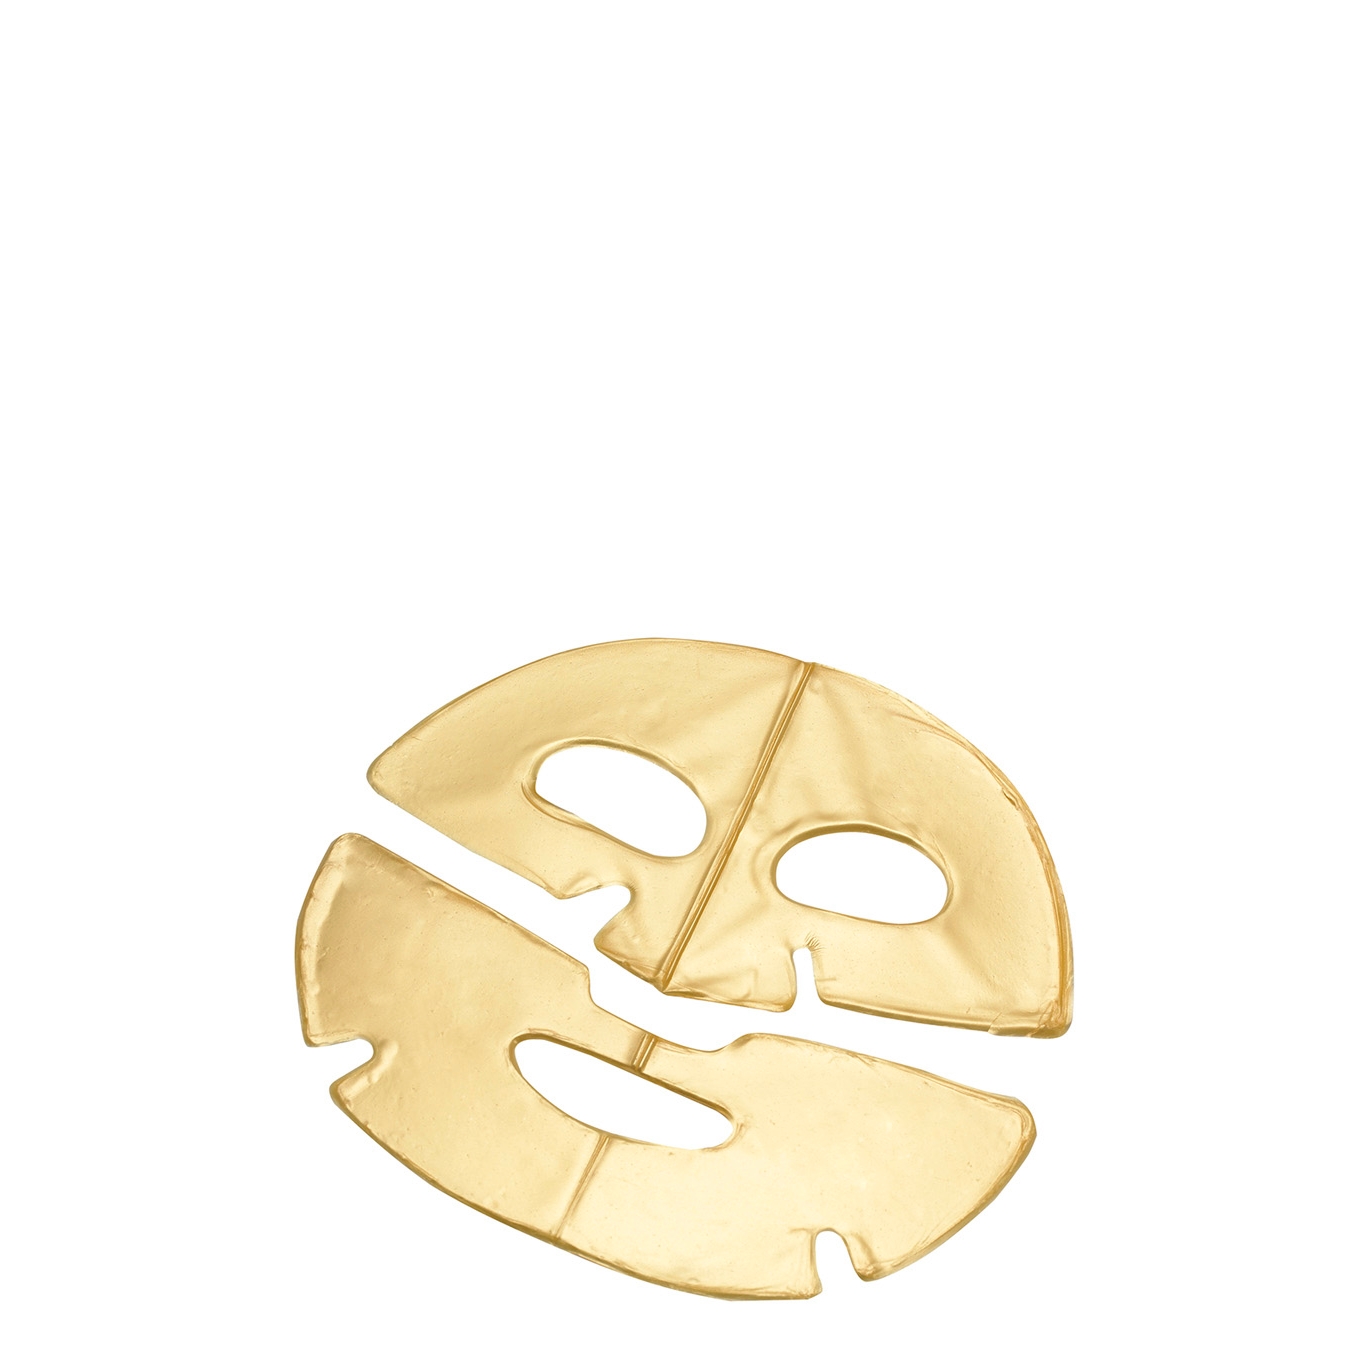 MZ Skin Hydra-Lift Golden Facial Treatment Masks